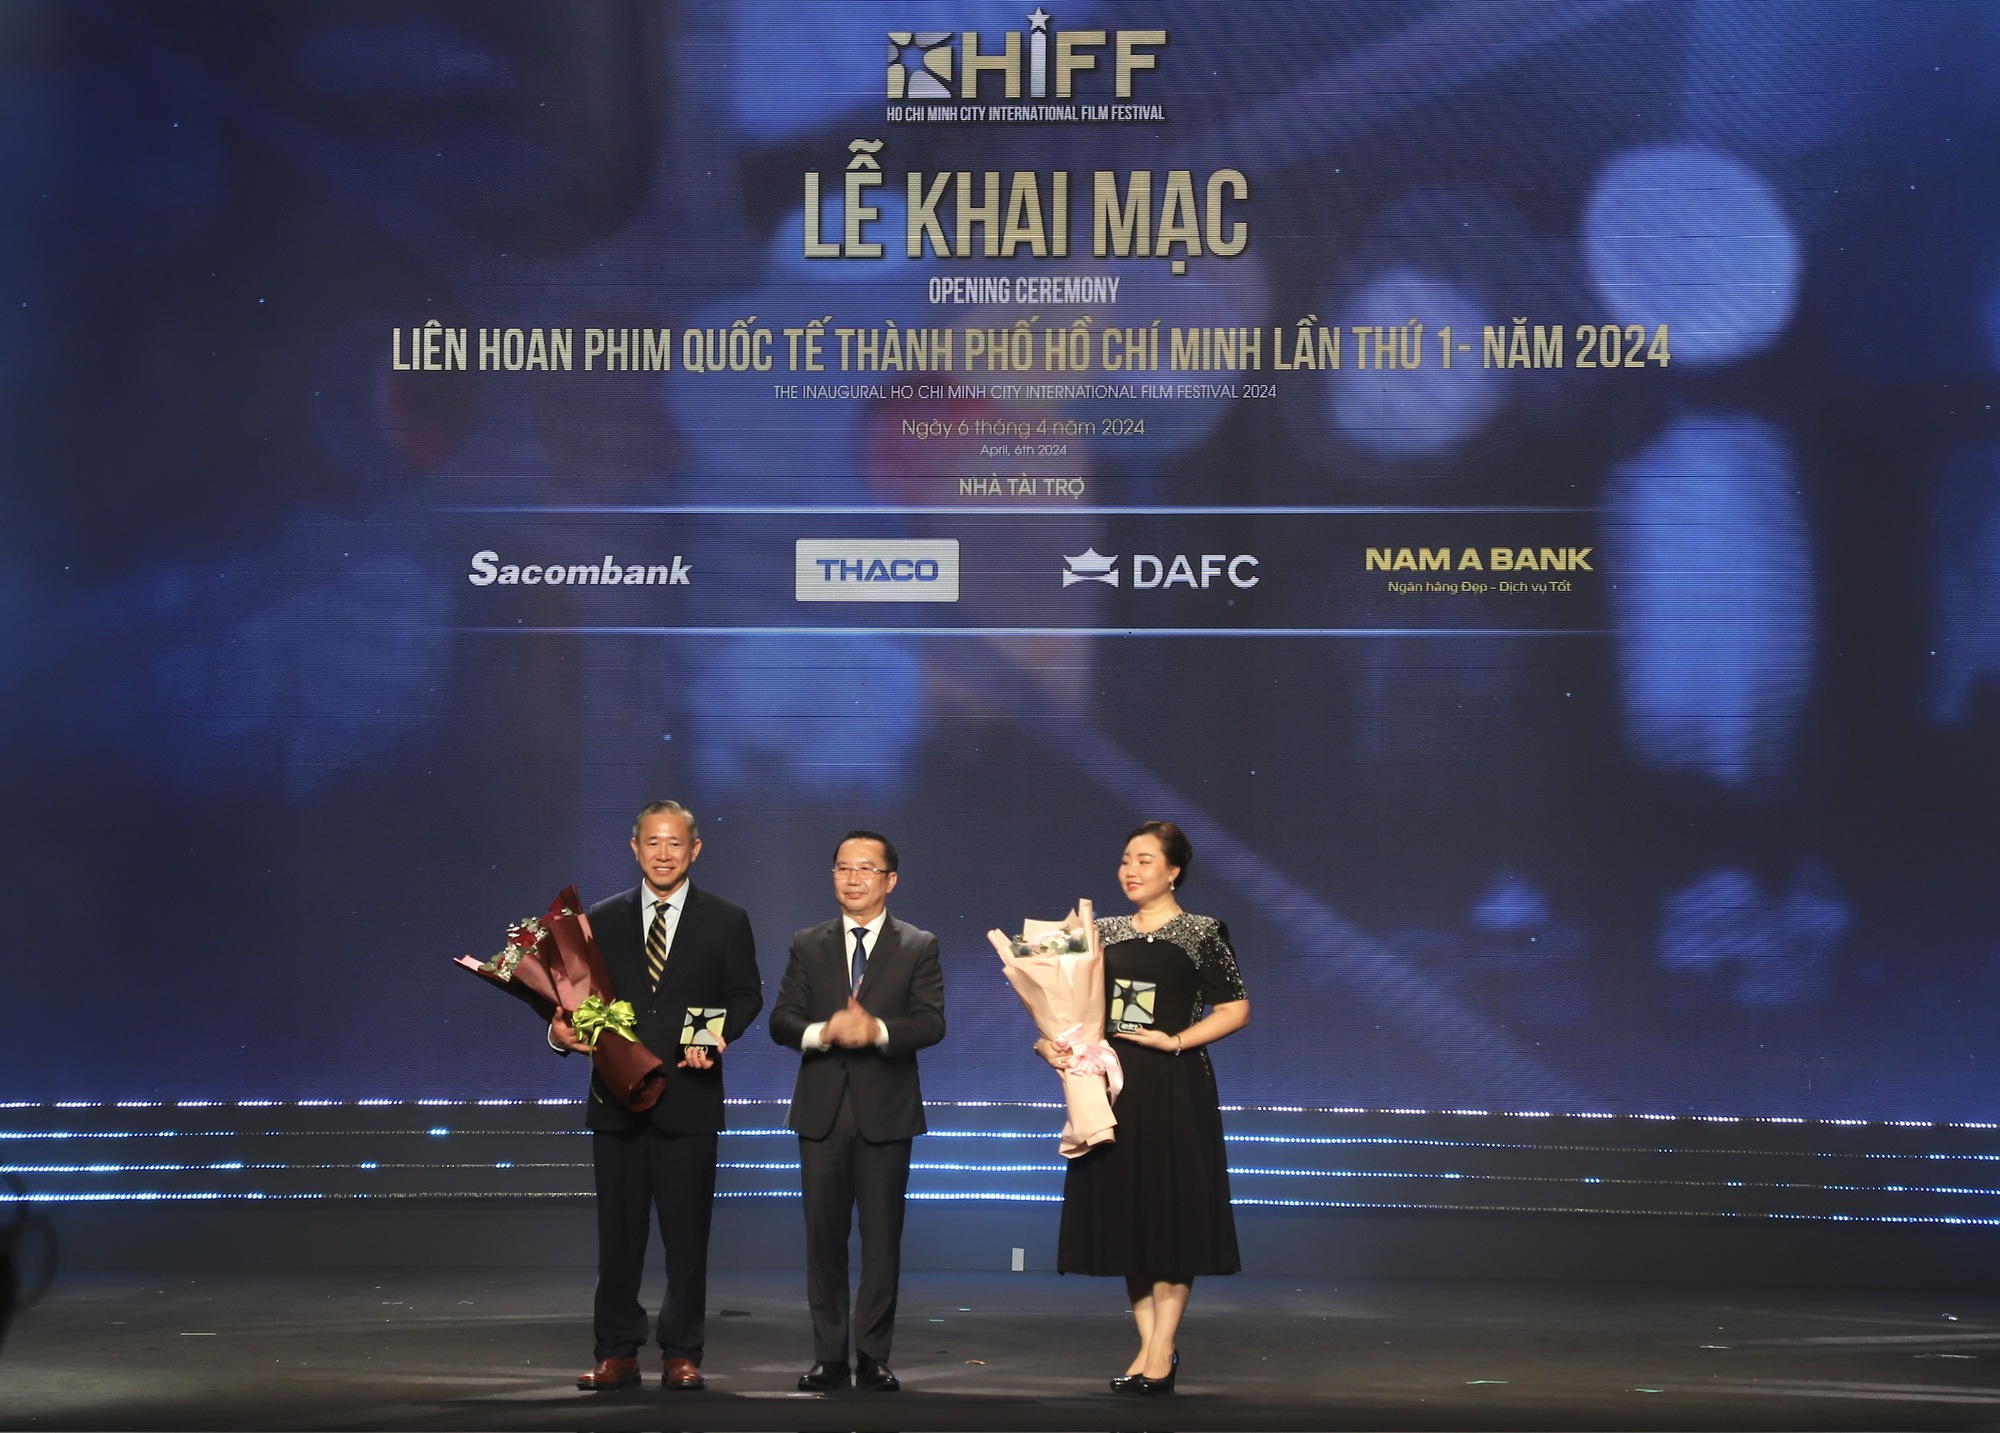 Khai mạc Liên hoan Phim quốc tế Thành phố Hồ Chí Minh lần thứ 1 - HIFF 2024 - Ảnh 7.